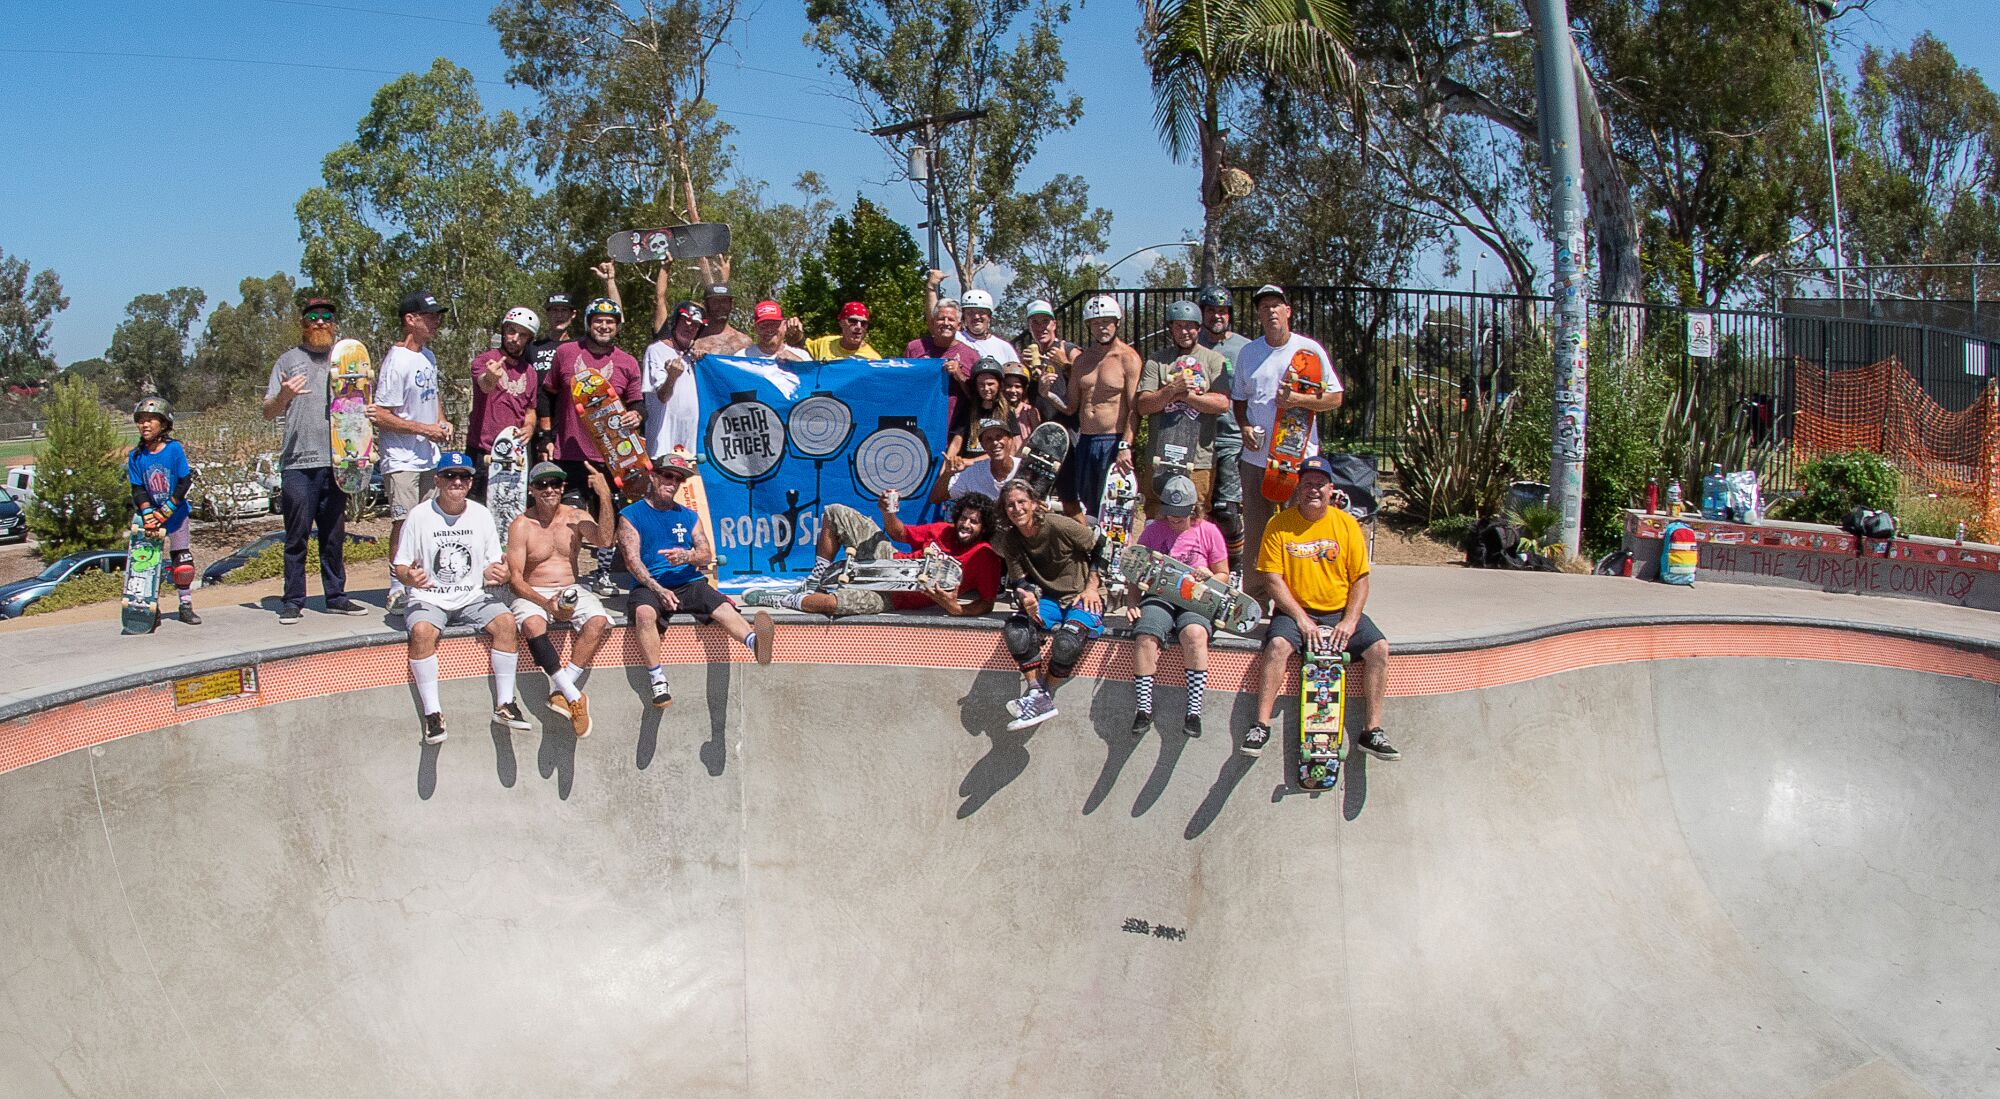 The Deathracer crew at Linda Vista Skateboard Park on Sept. 3, 2022.